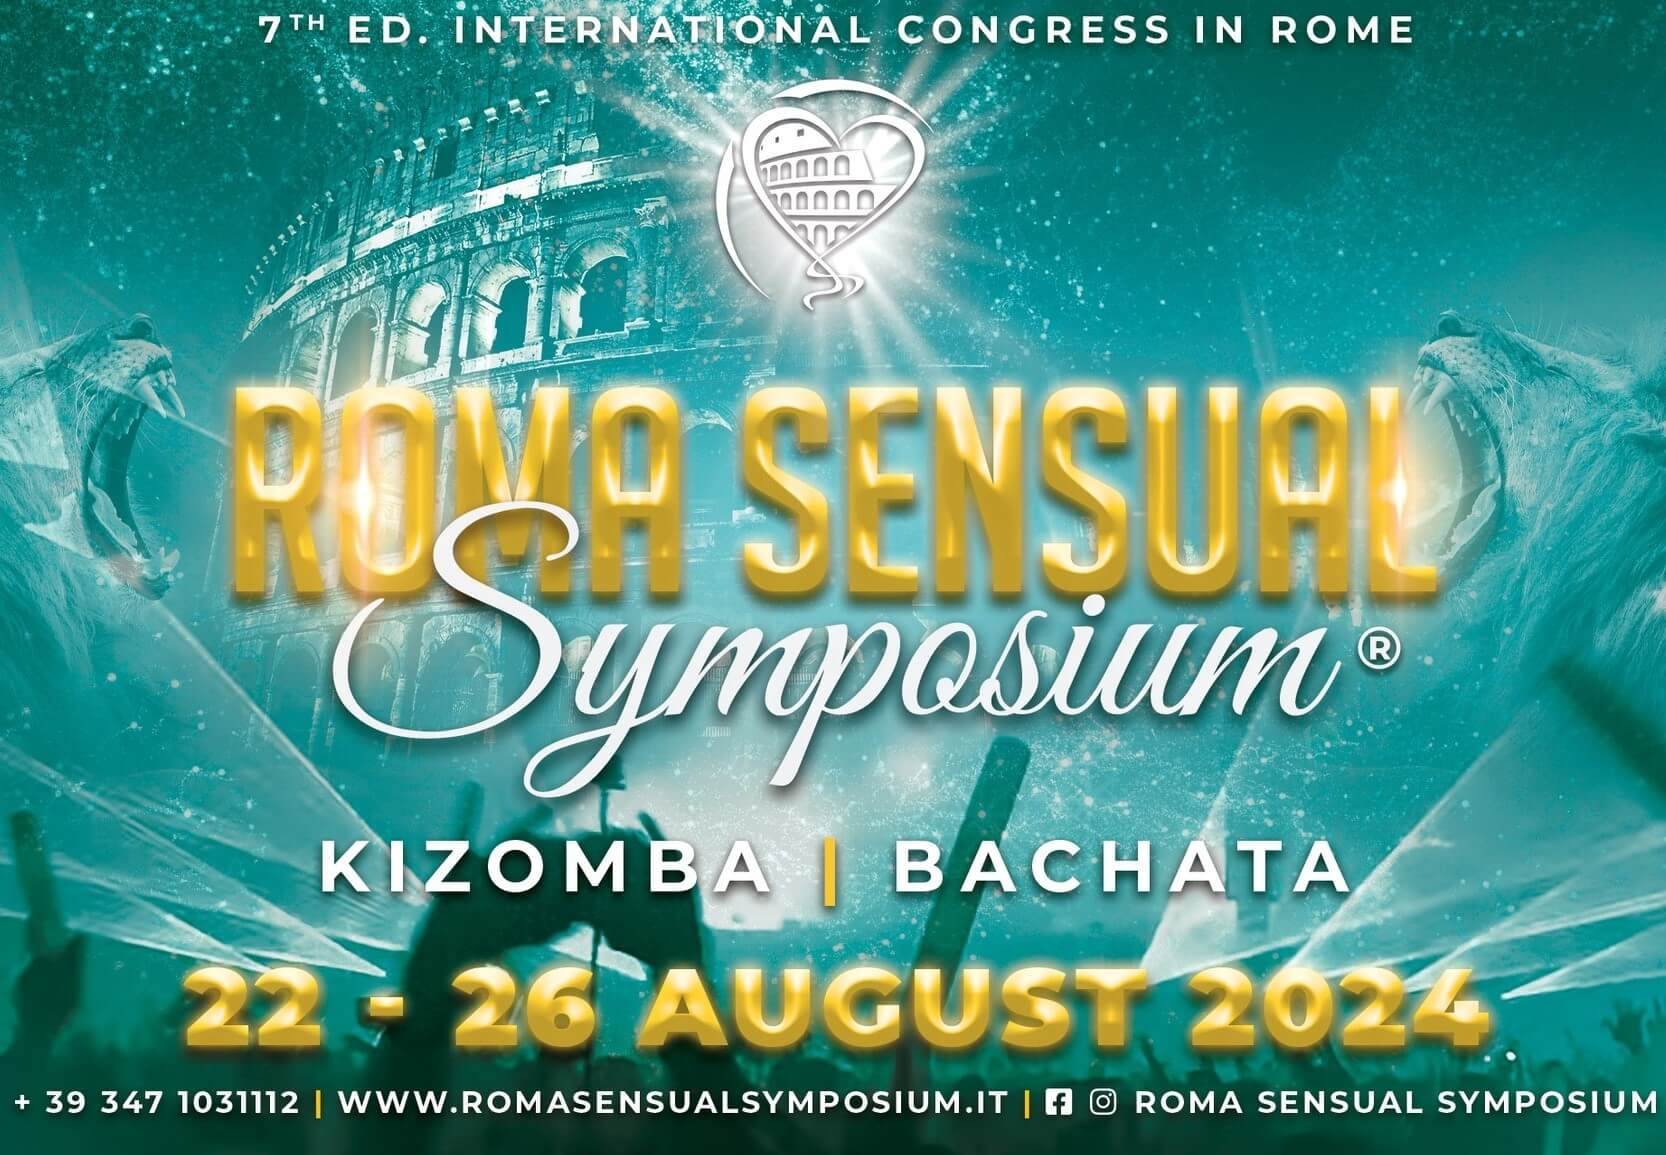 Rome Sensual Symposium